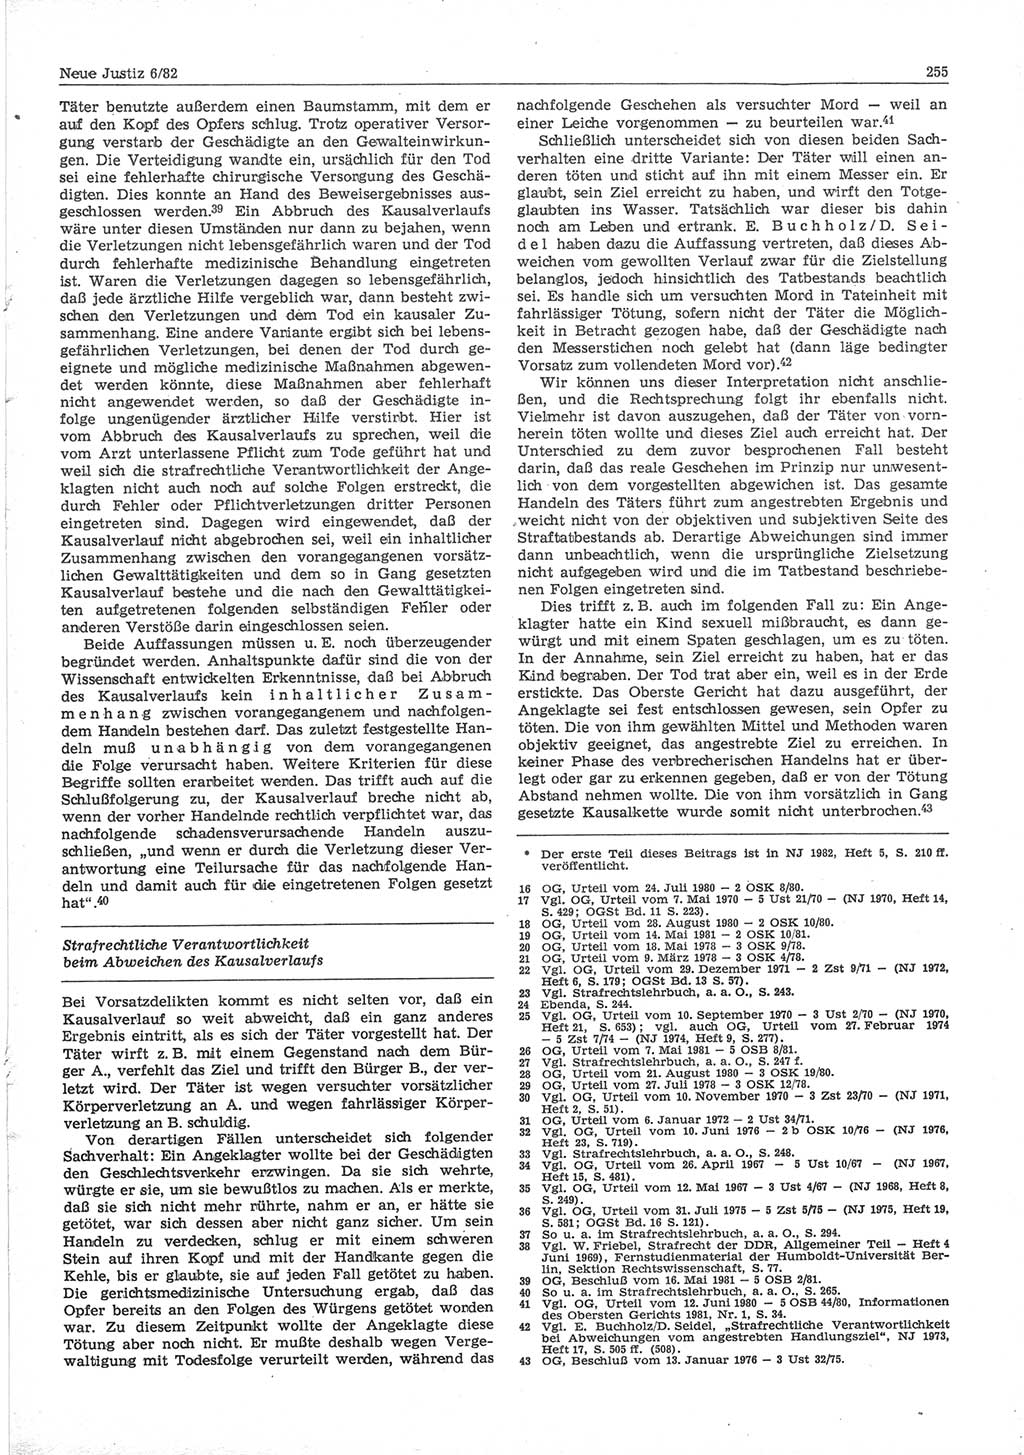 Neue Justiz (NJ), Zeitschrift für sozialistisches Recht und Gesetzlichkeit [Deutsche Demokratische Republik (DDR)], 36. Jahrgang 1982, Seite 255 (NJ DDR 1982, S. 255)